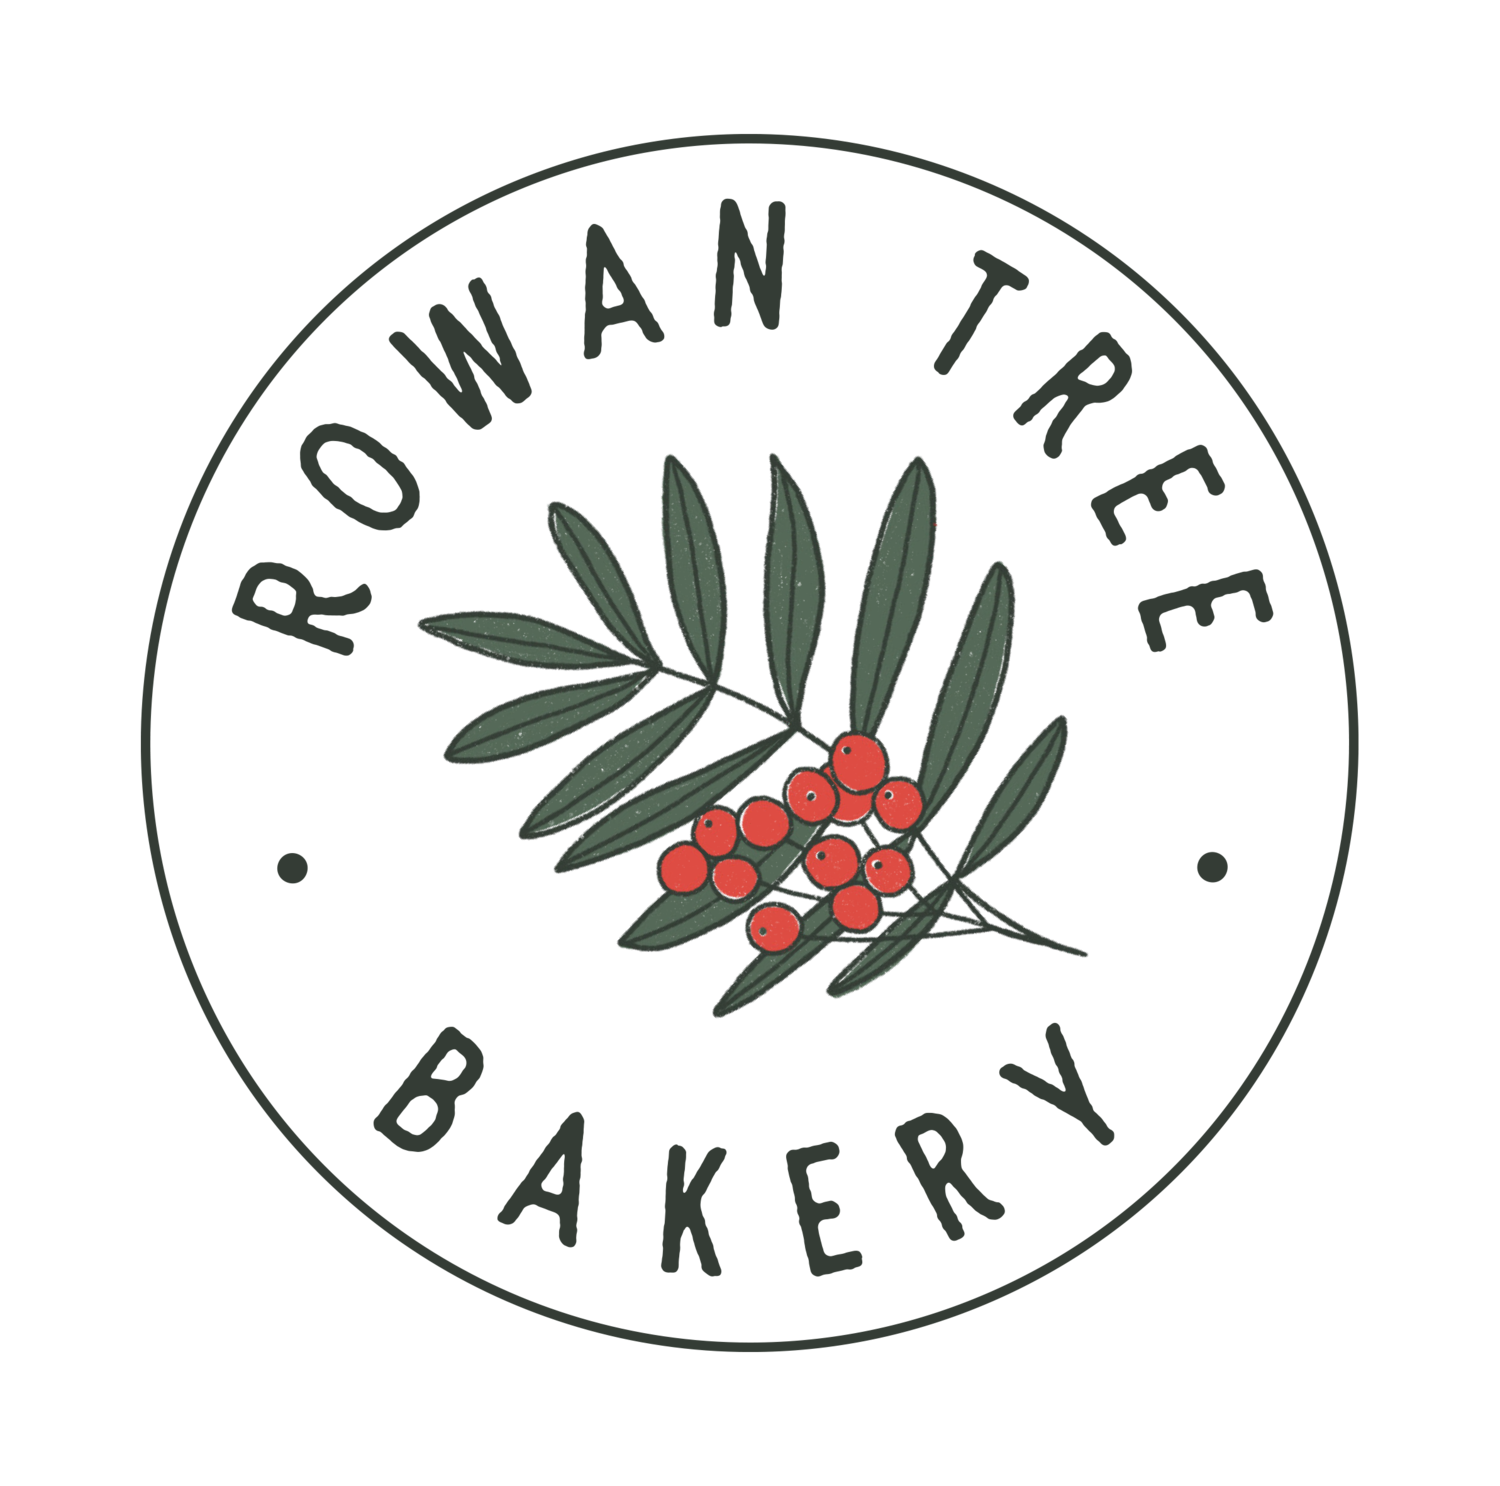 Rowan Tree Bakery